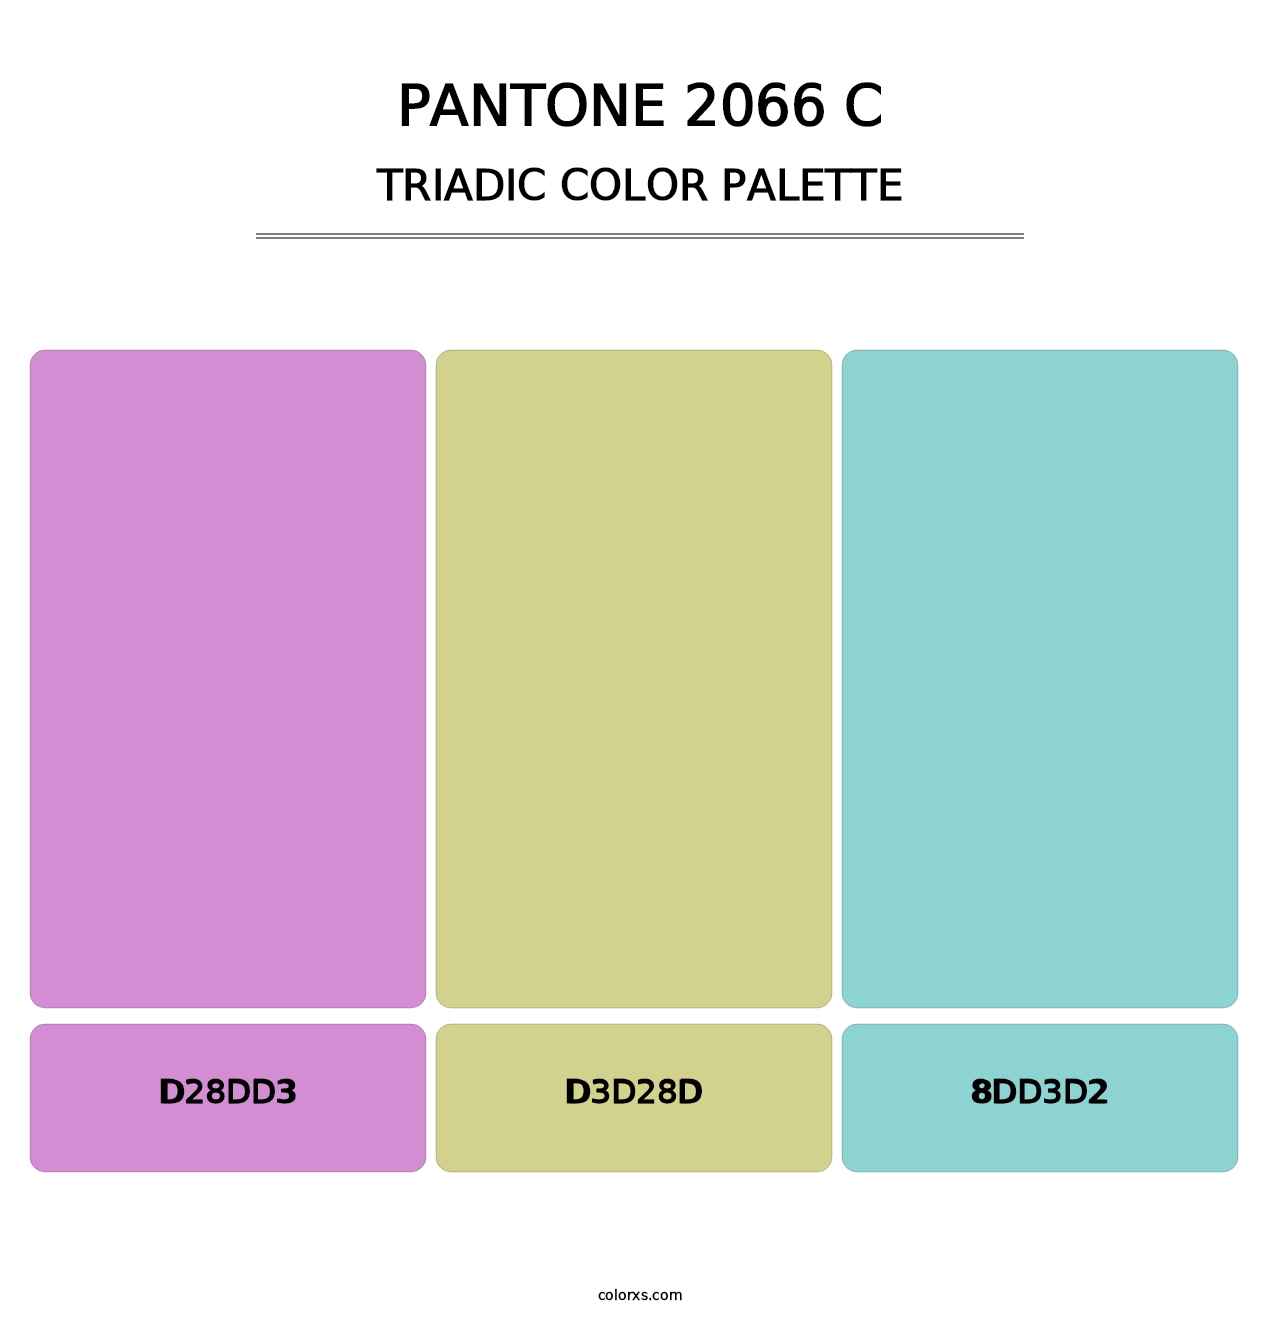 PANTONE 2066 C - Triadic Color Palette